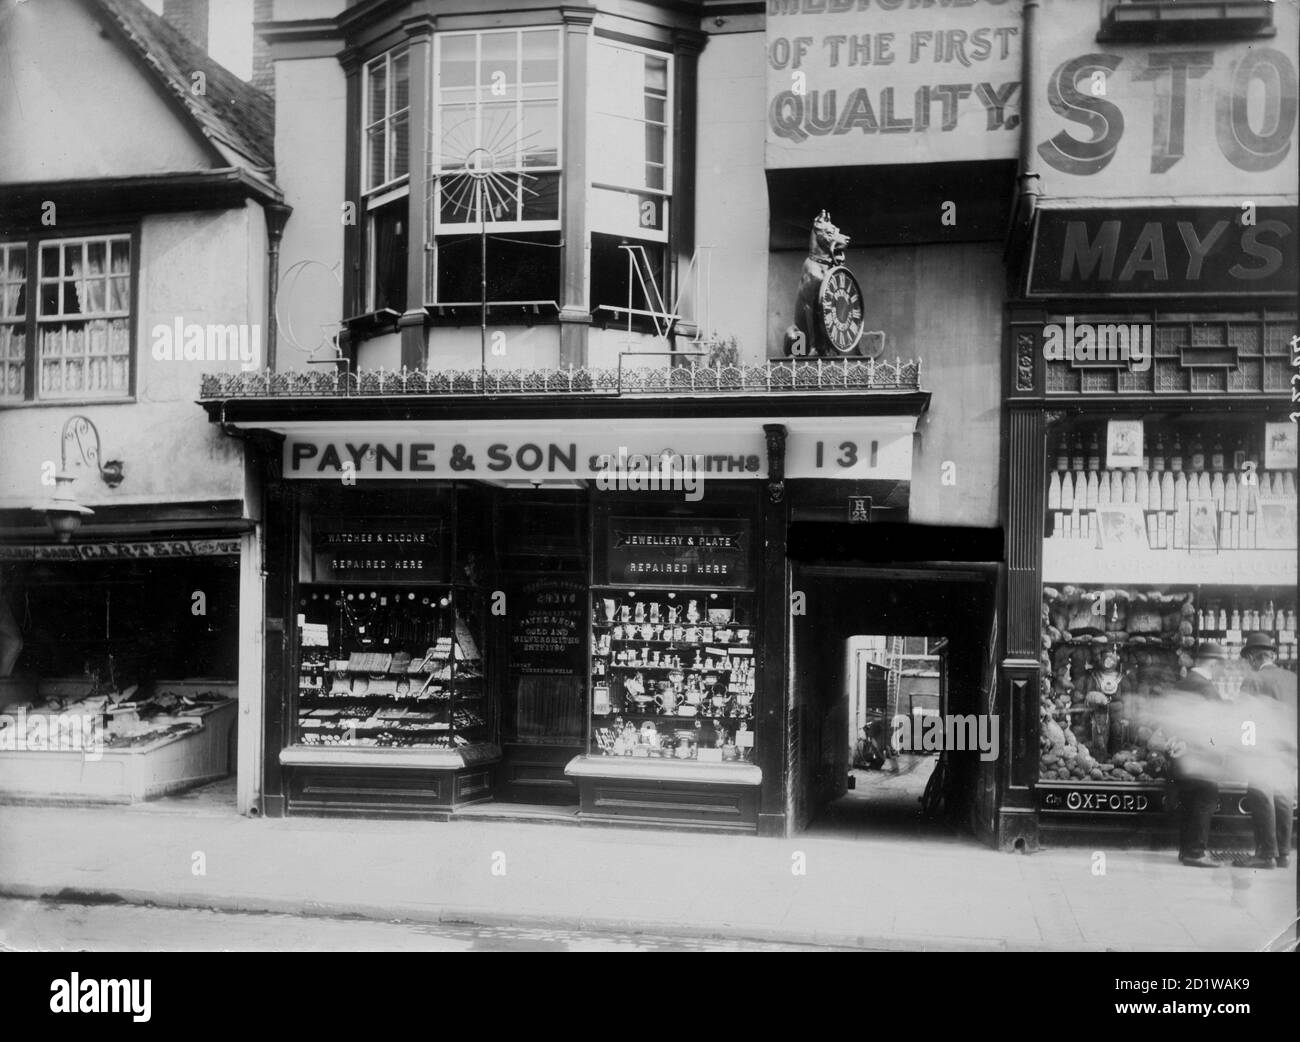 Payne Und Son, High Street, Oxford, Oxfordshire. Die Geschäftsräume von Payne und Son the Jewelers, die einen Hund zeigen, der eine Taschenuhr in seinem Mund über dem Eingang hält. Das Unternehmen handelt noch heute von diesem Laden aus. Stockfoto